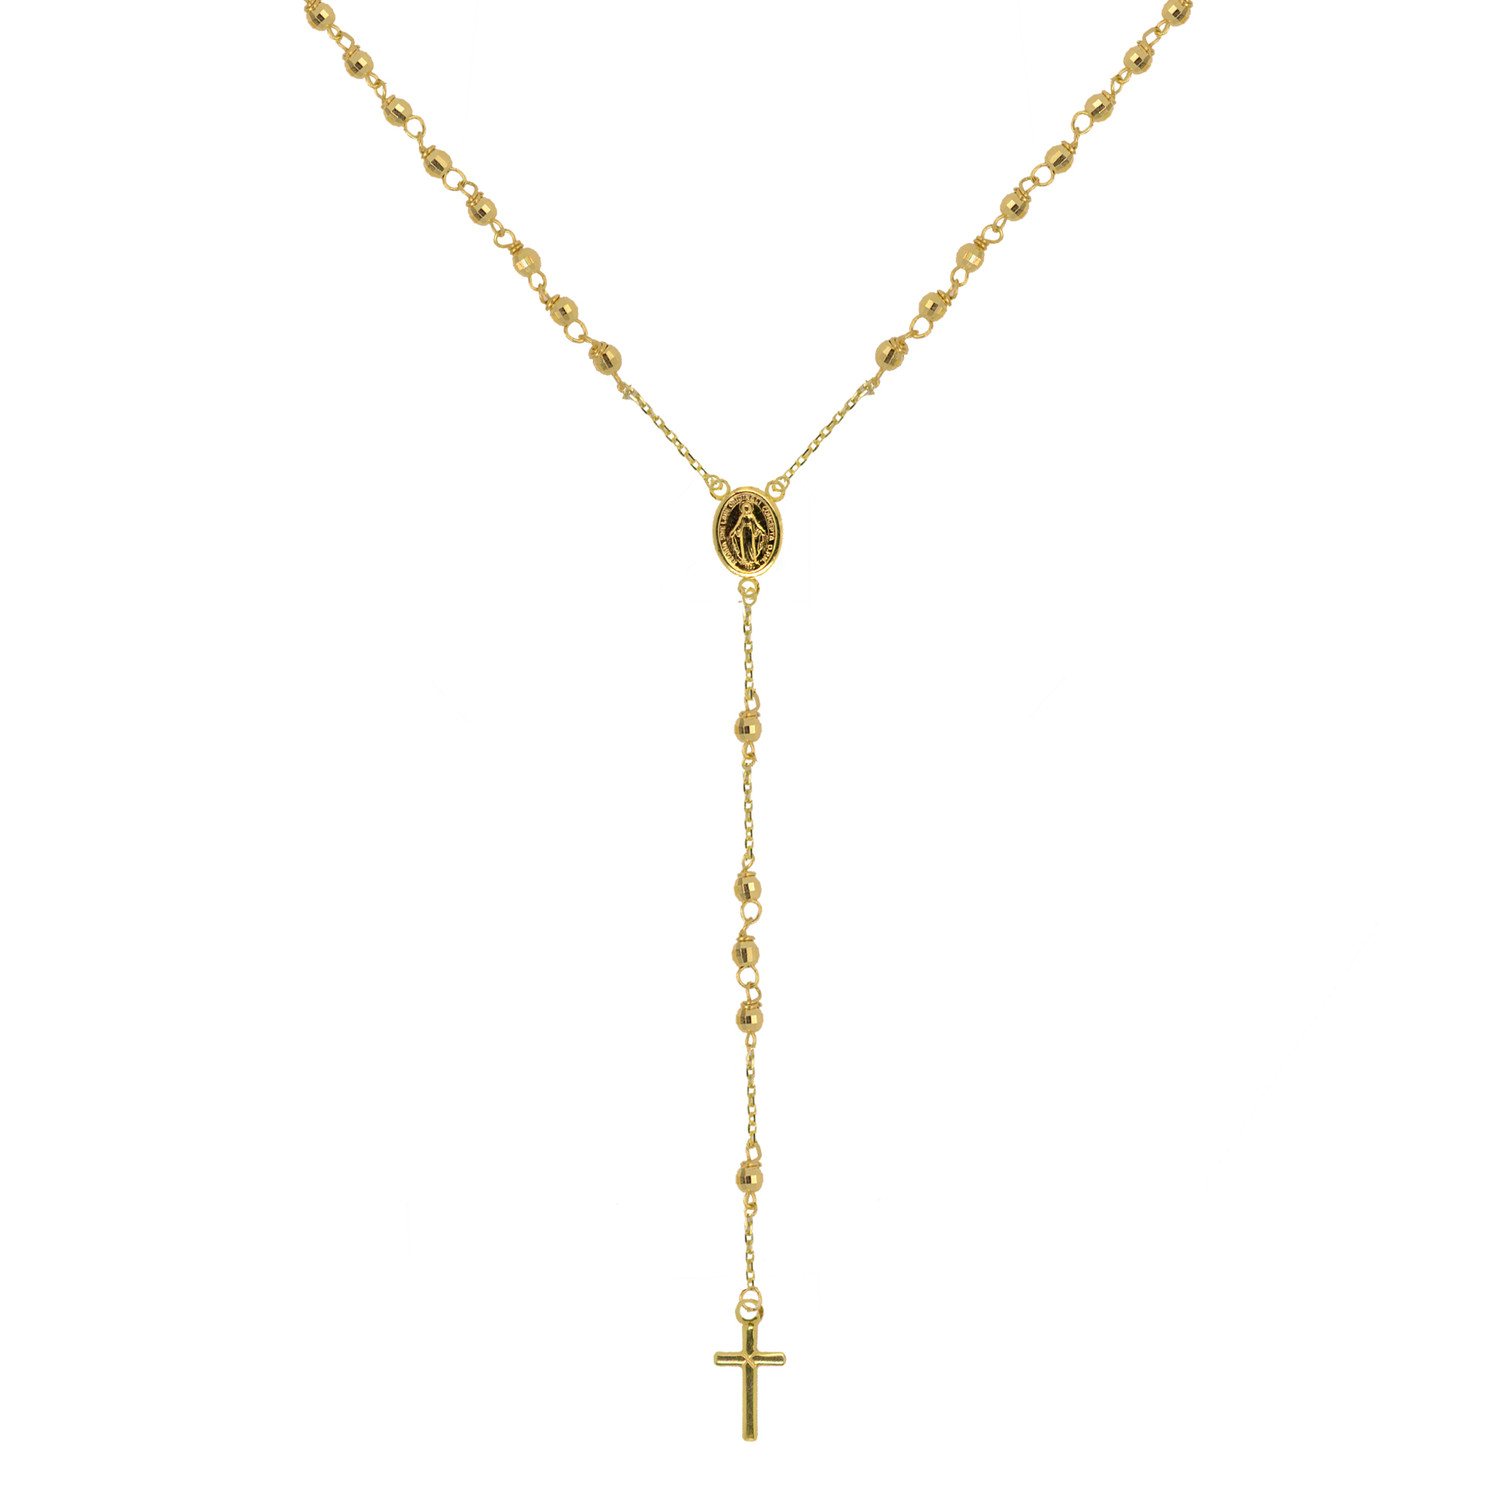 Evolution Group Zlatý 14 karátový náhrdelník růženec s křížem a medailonkem s Pannou Marií RŽ10 zlatý